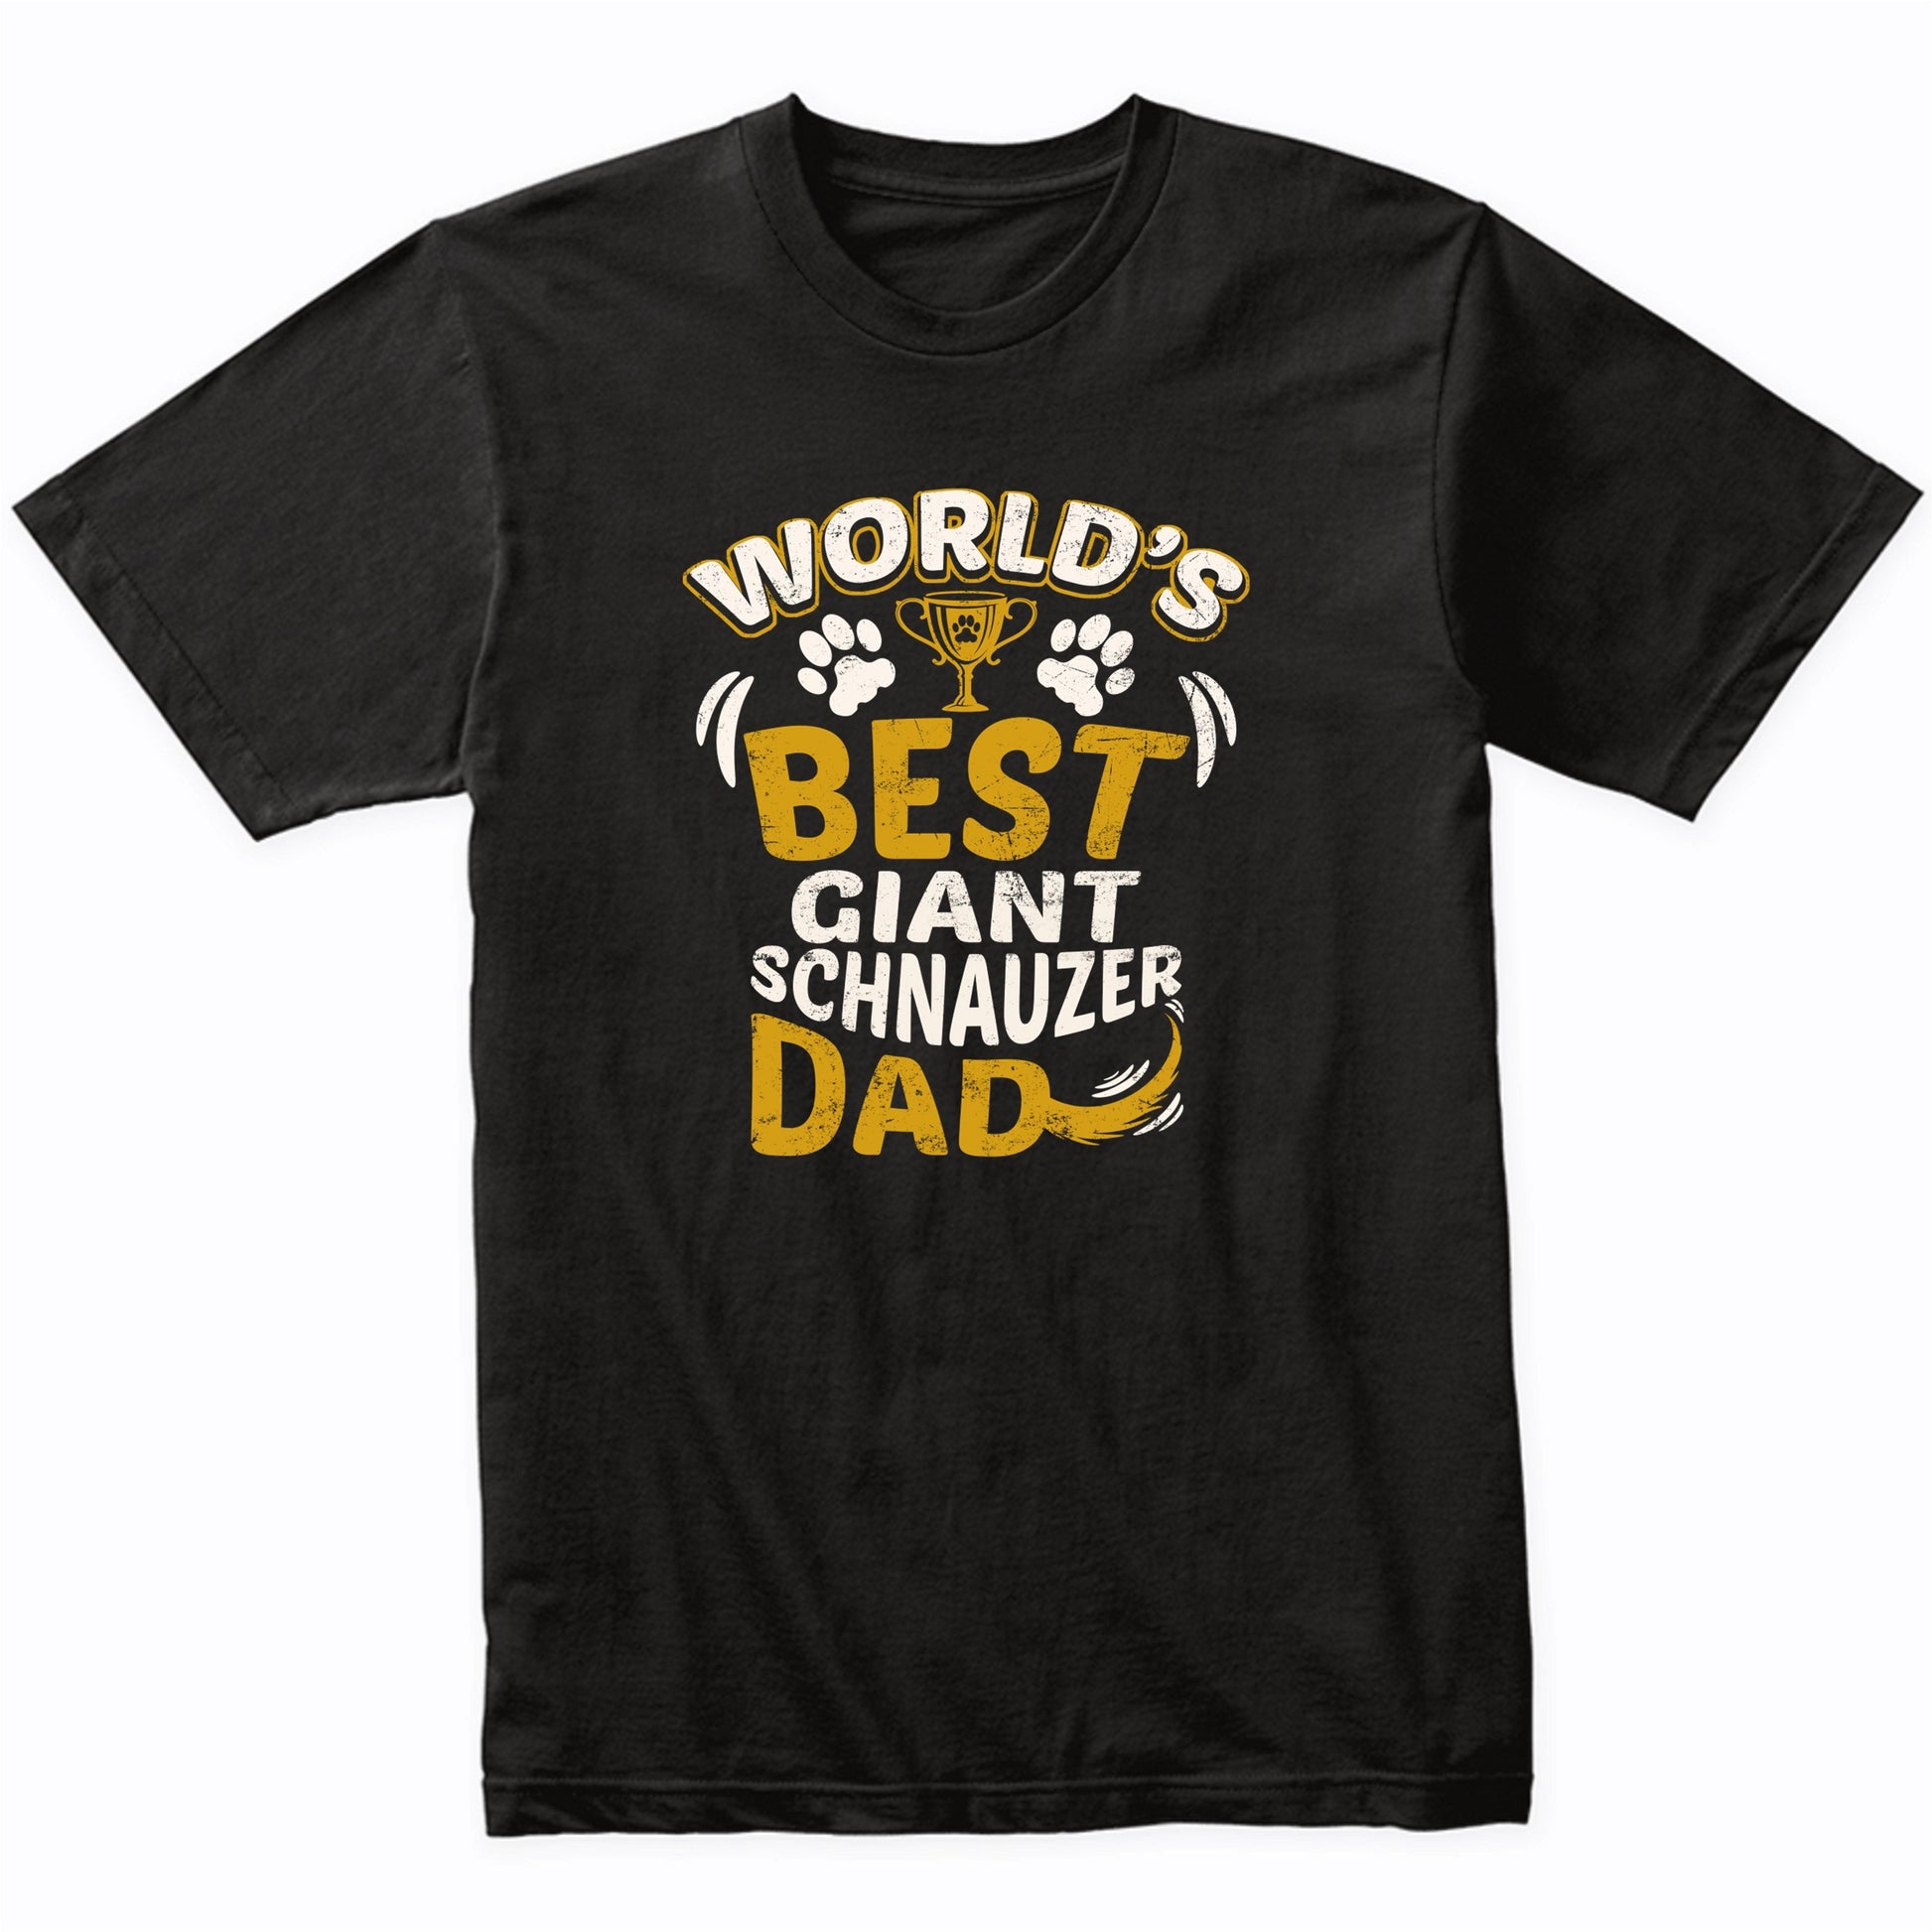 World's Best Giant Schnauzer Dad Graphic T-Shirt